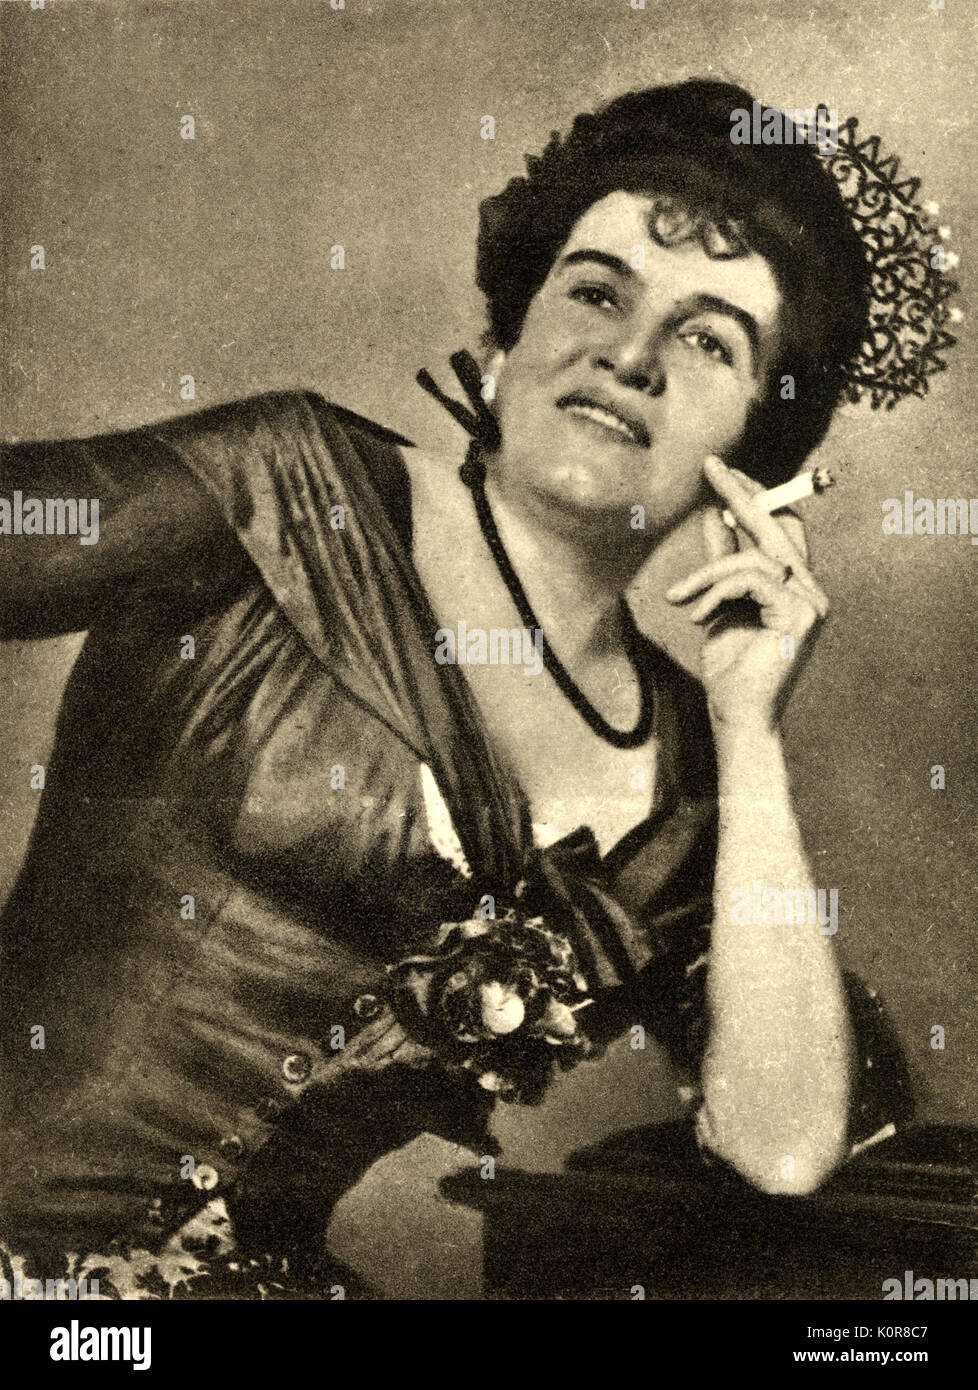 CAHIER, Madame Charles - come Carmen di Bizet opera Carmen, 1916 American contralto ( 1870 - 1951 ) Foto Stock